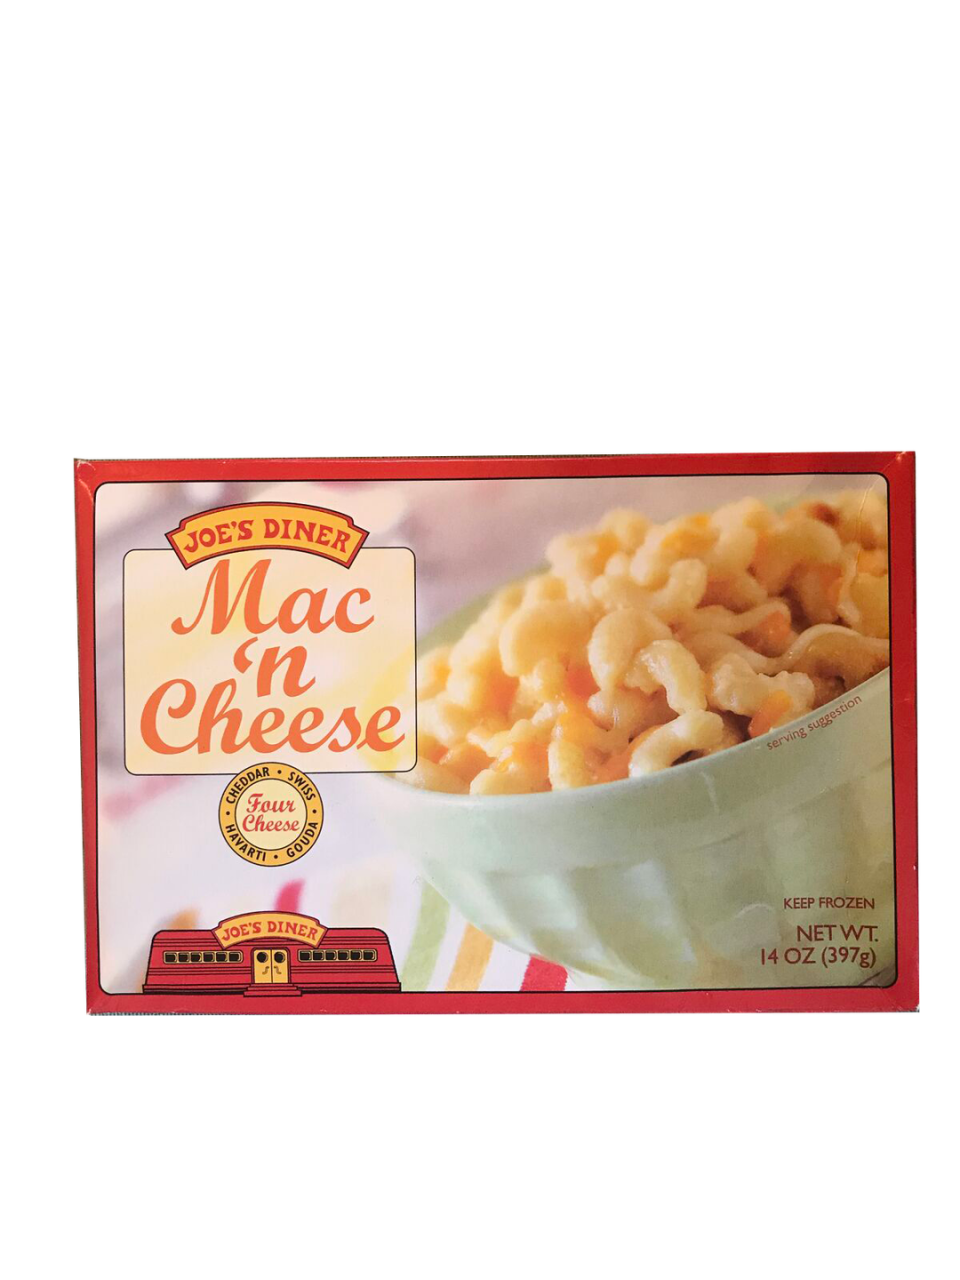 11. Four Cheese Mac 'n Cheese